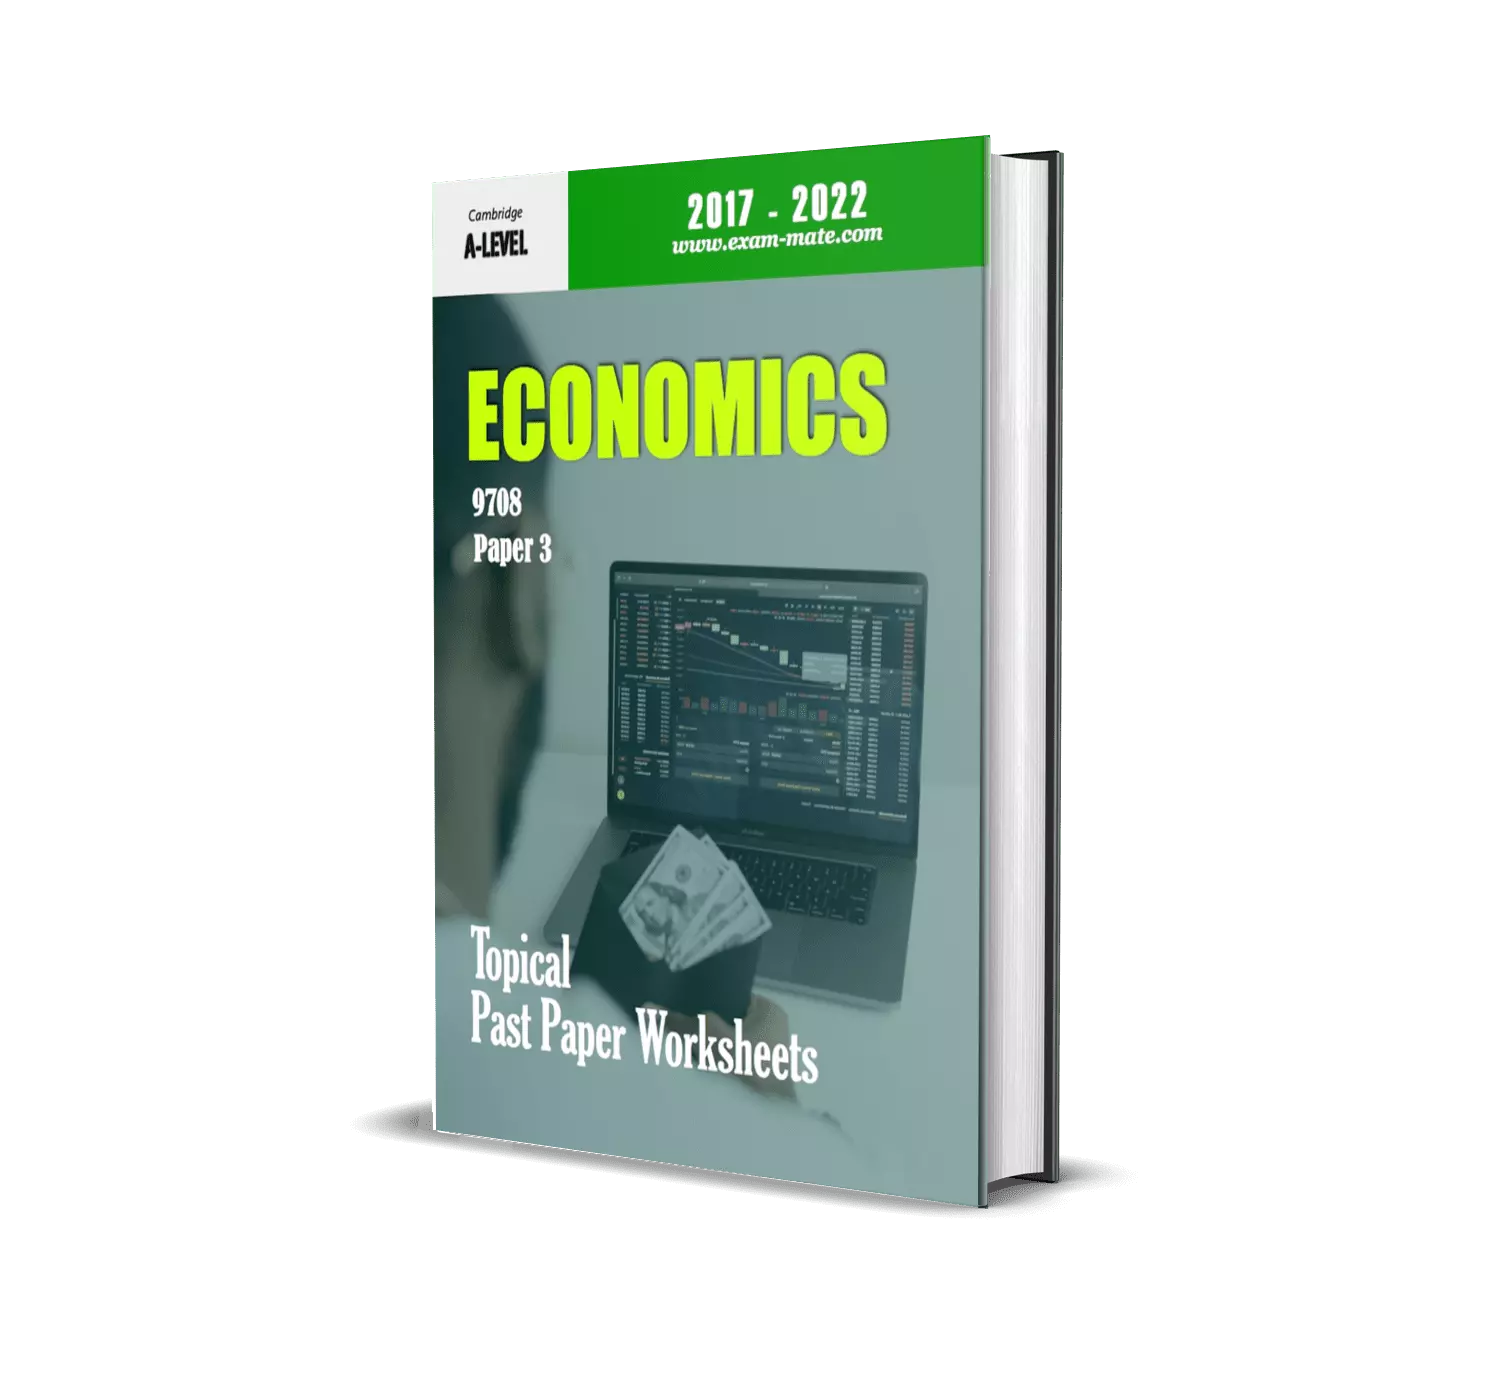 ECONOMICS P3